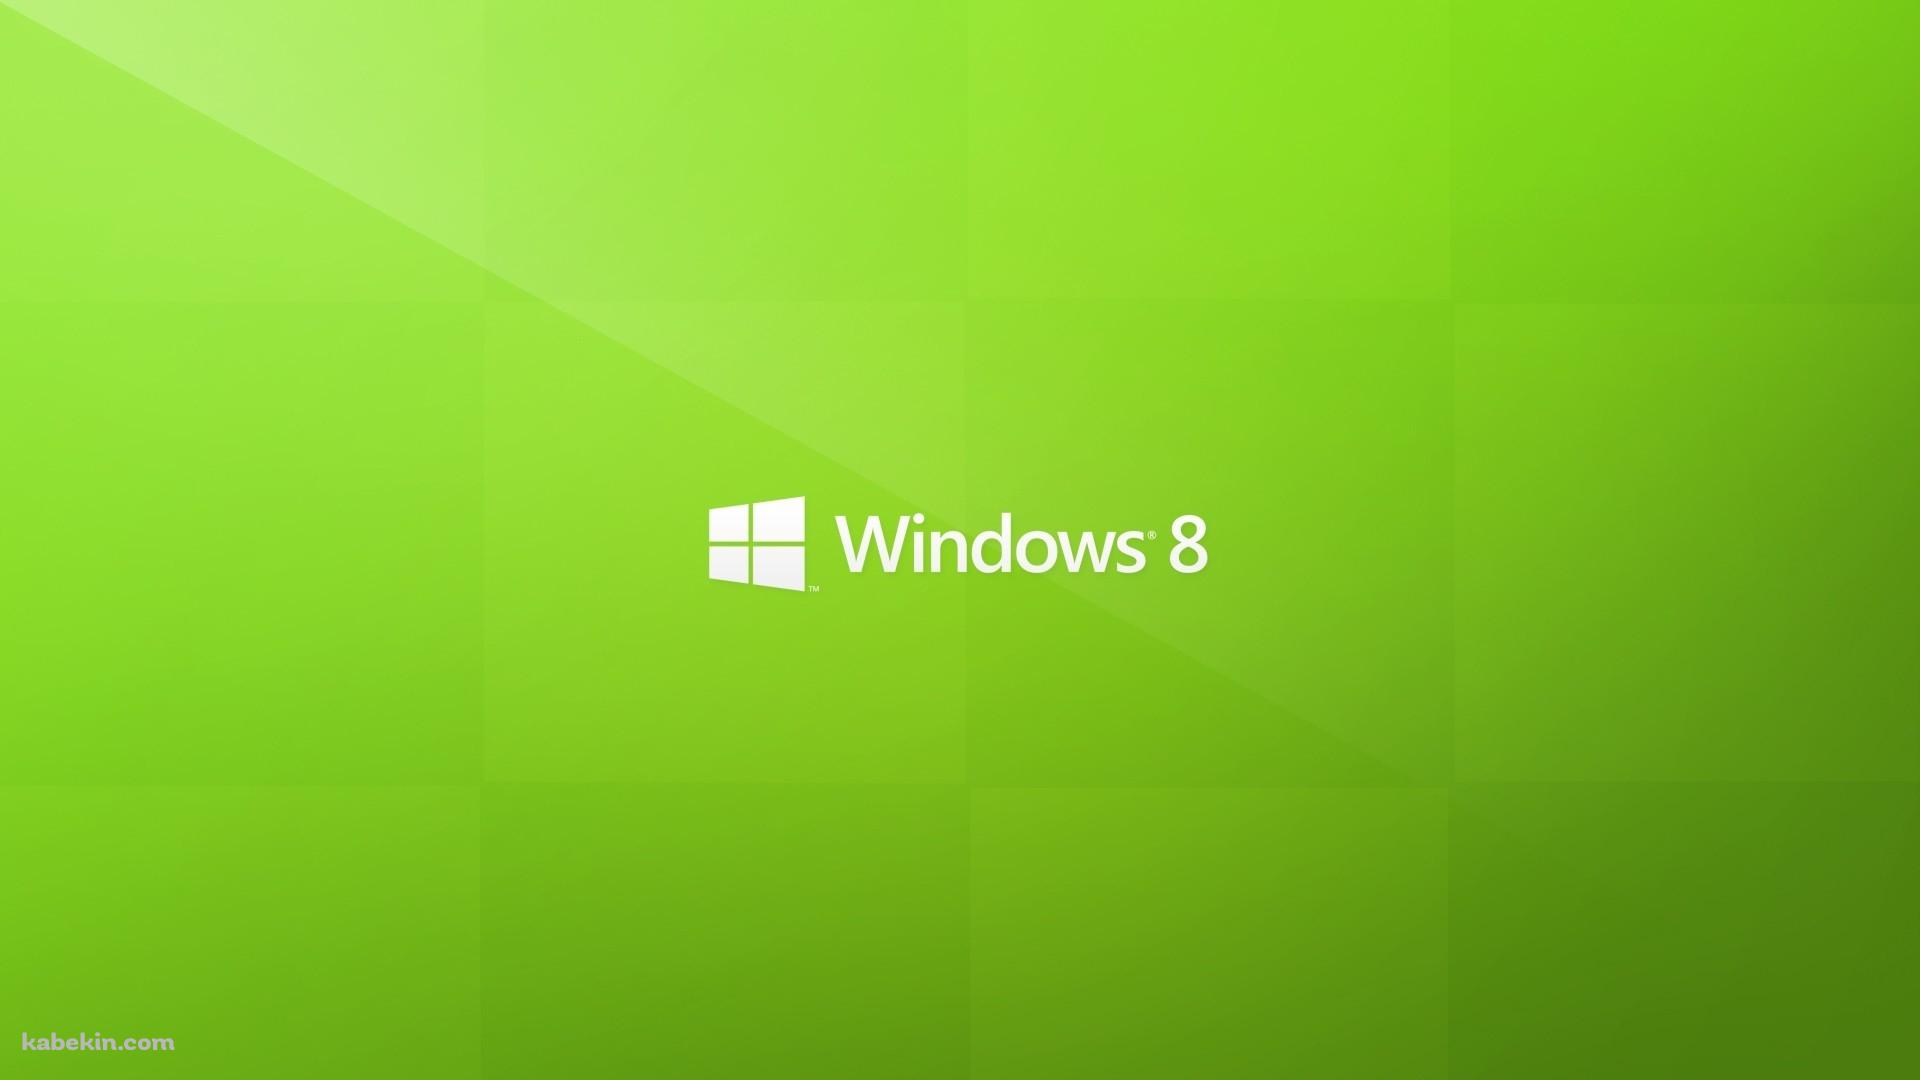 windows 8 ウィンドウズの壁紙(1920px x 1080px) 高画質 PC・デスクトップ用